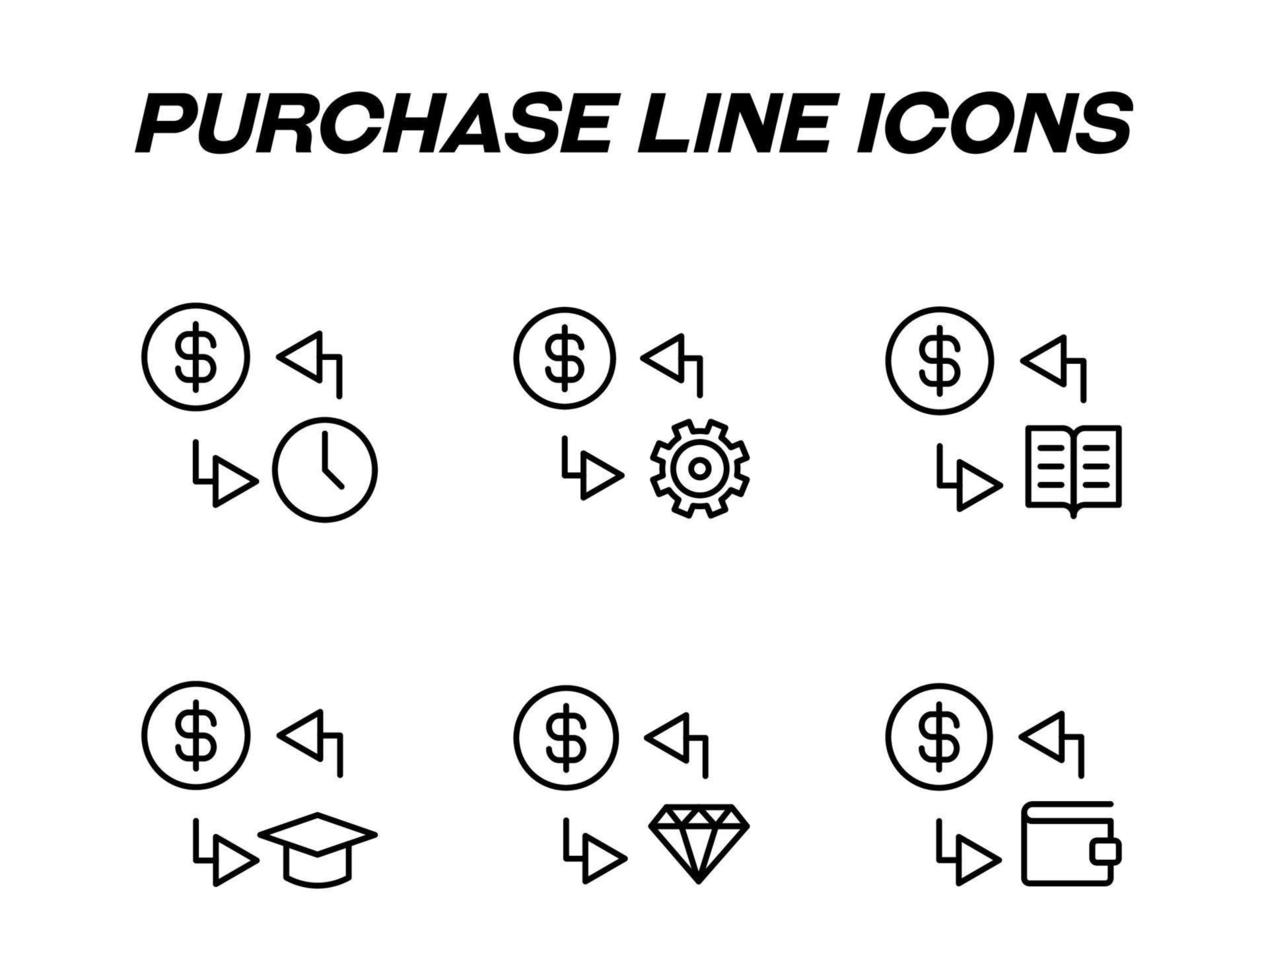 svartvit tecken i platt stil för butiker, butiker, webb webbplatser. redigerbar stroke. vektor linje ikon uppsättning med symboler av pengar, utbildning, teknologi och diamant utbyta